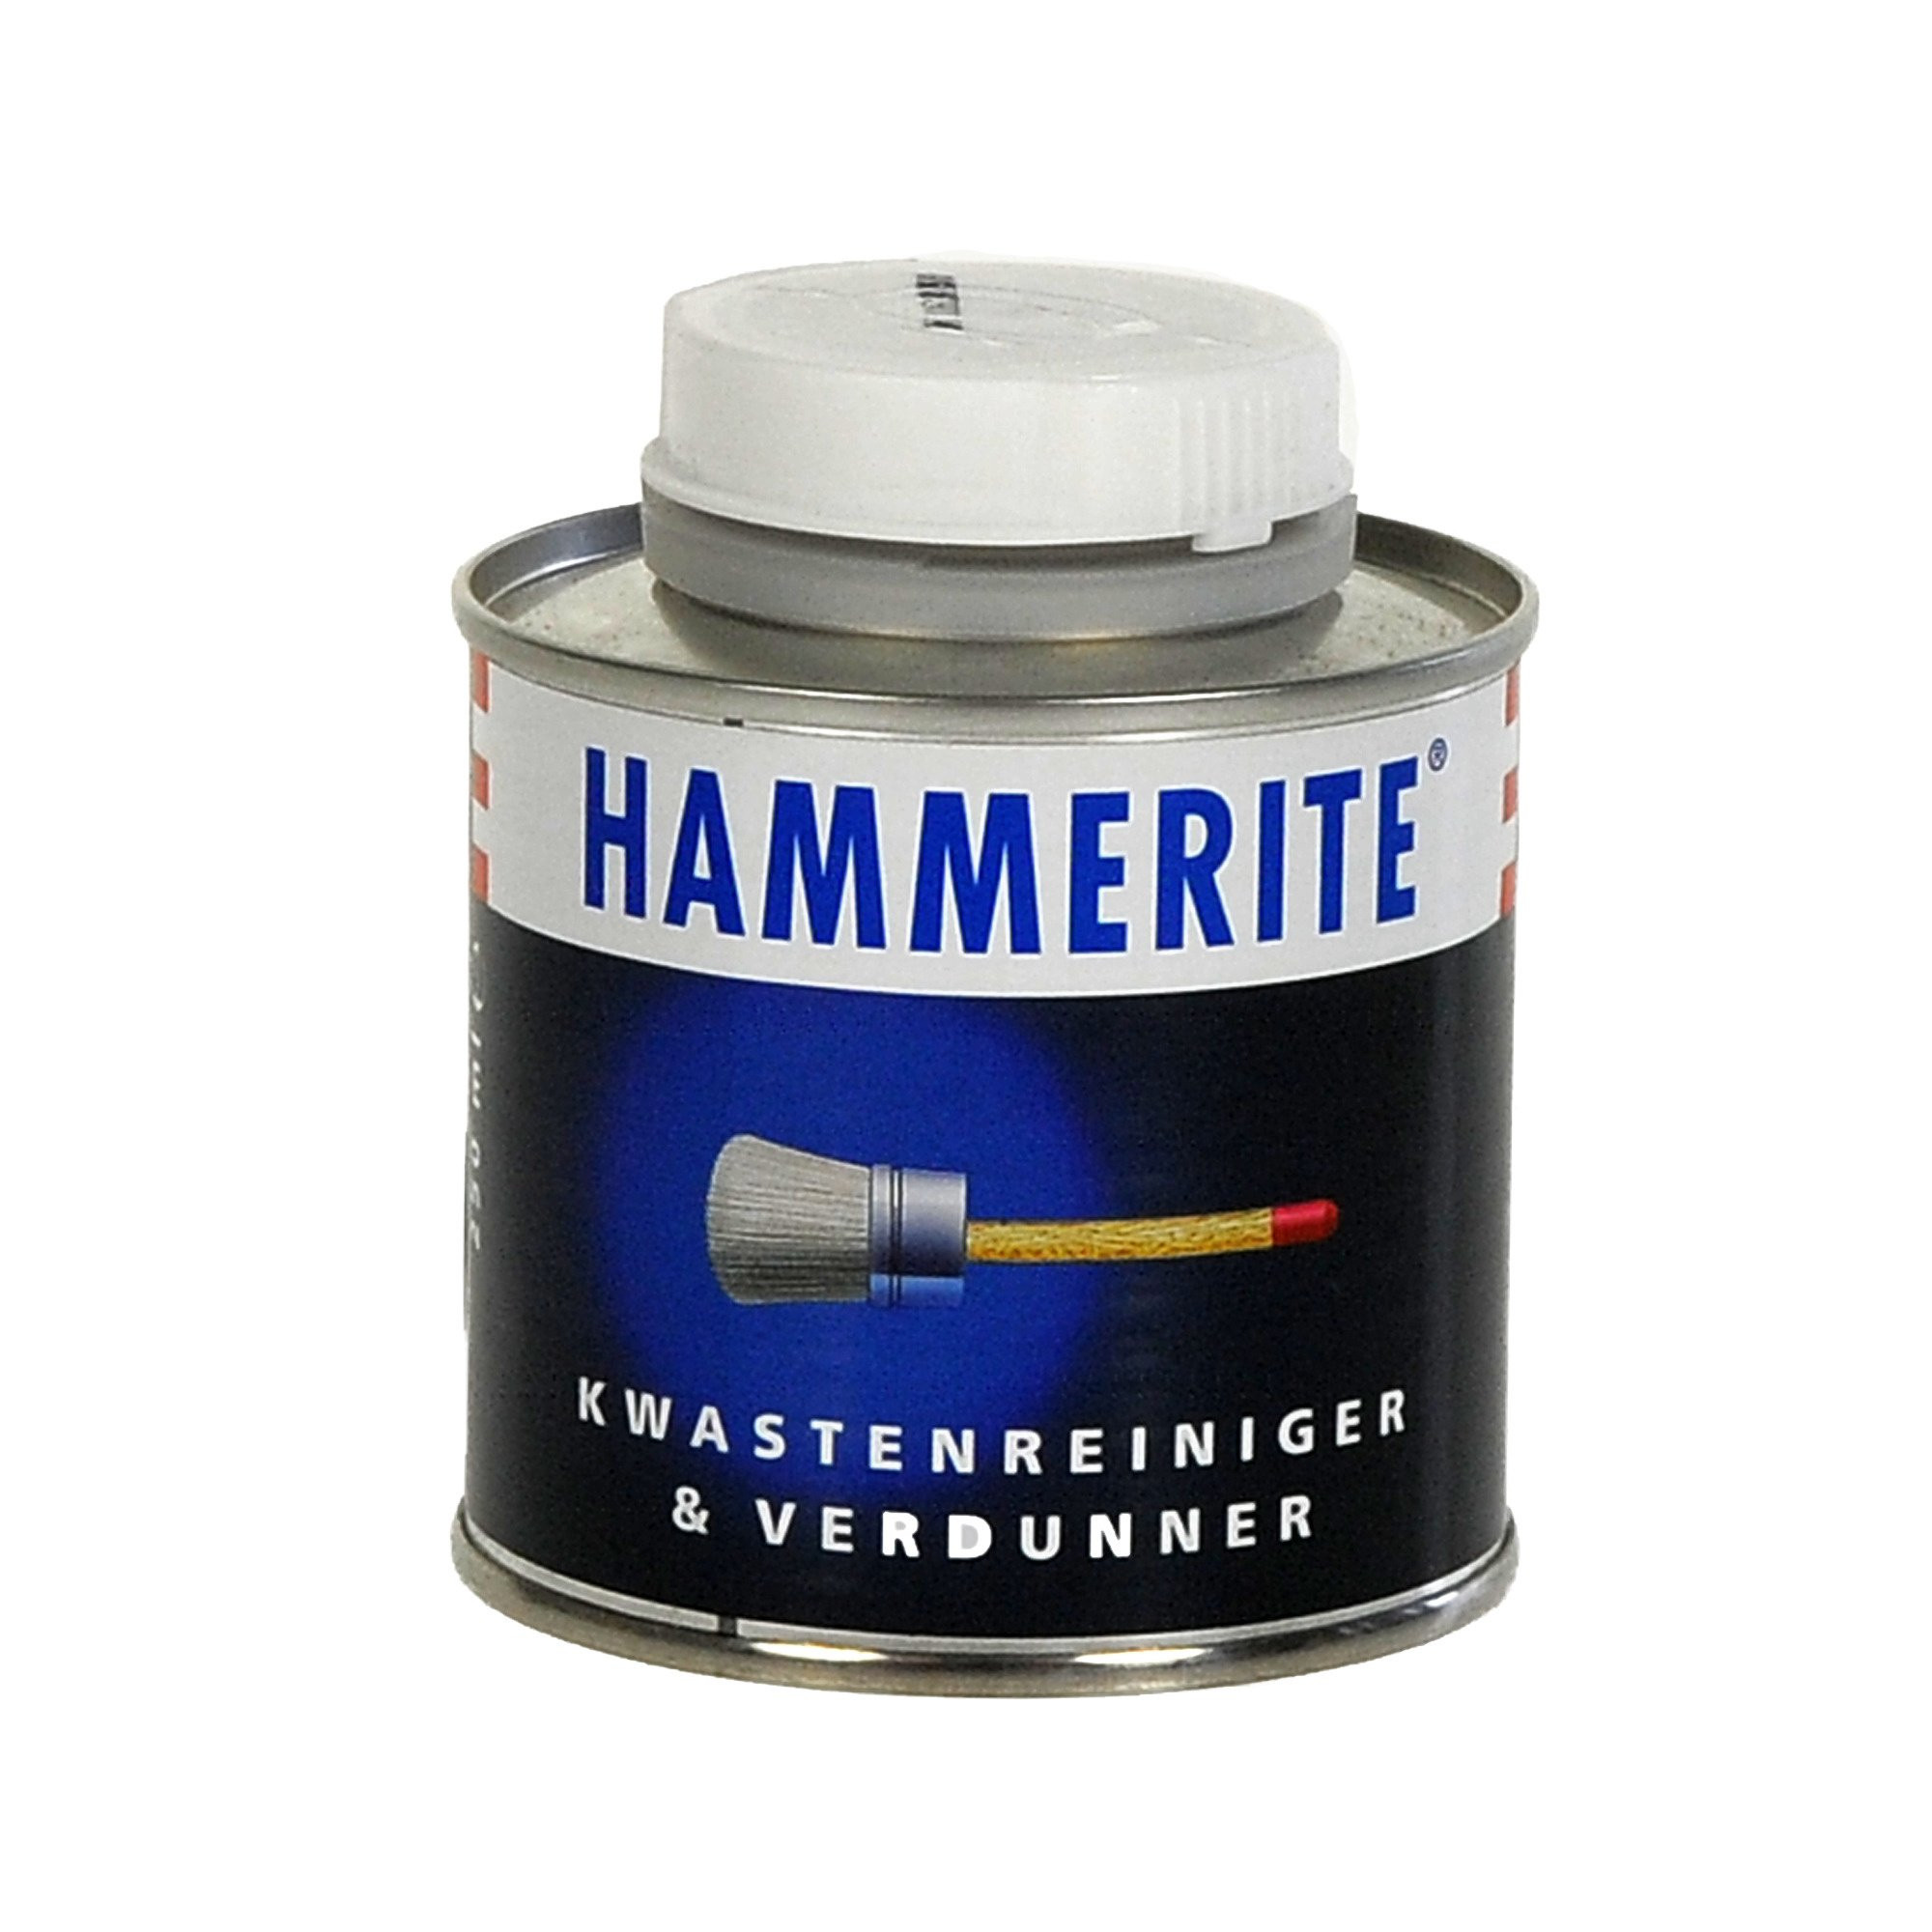 Hammerite Kwastenreiniger & Verdunner - 250 ml